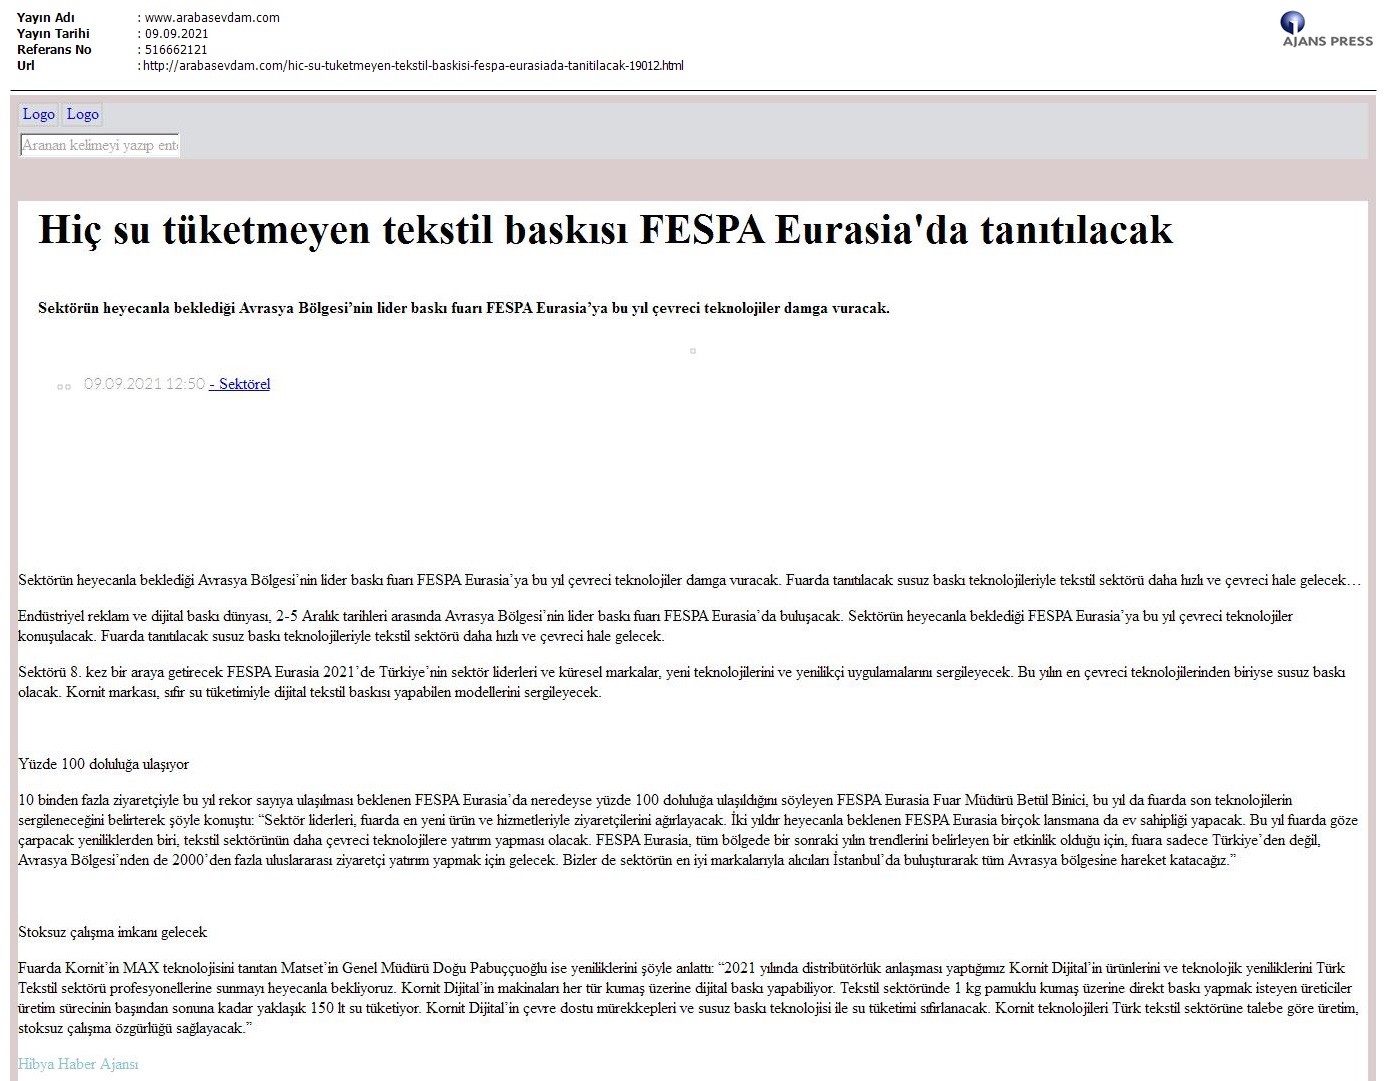 Hiç su tüketmeyen tekstil baskısı FESPA Eurasia'da tanıtılacak